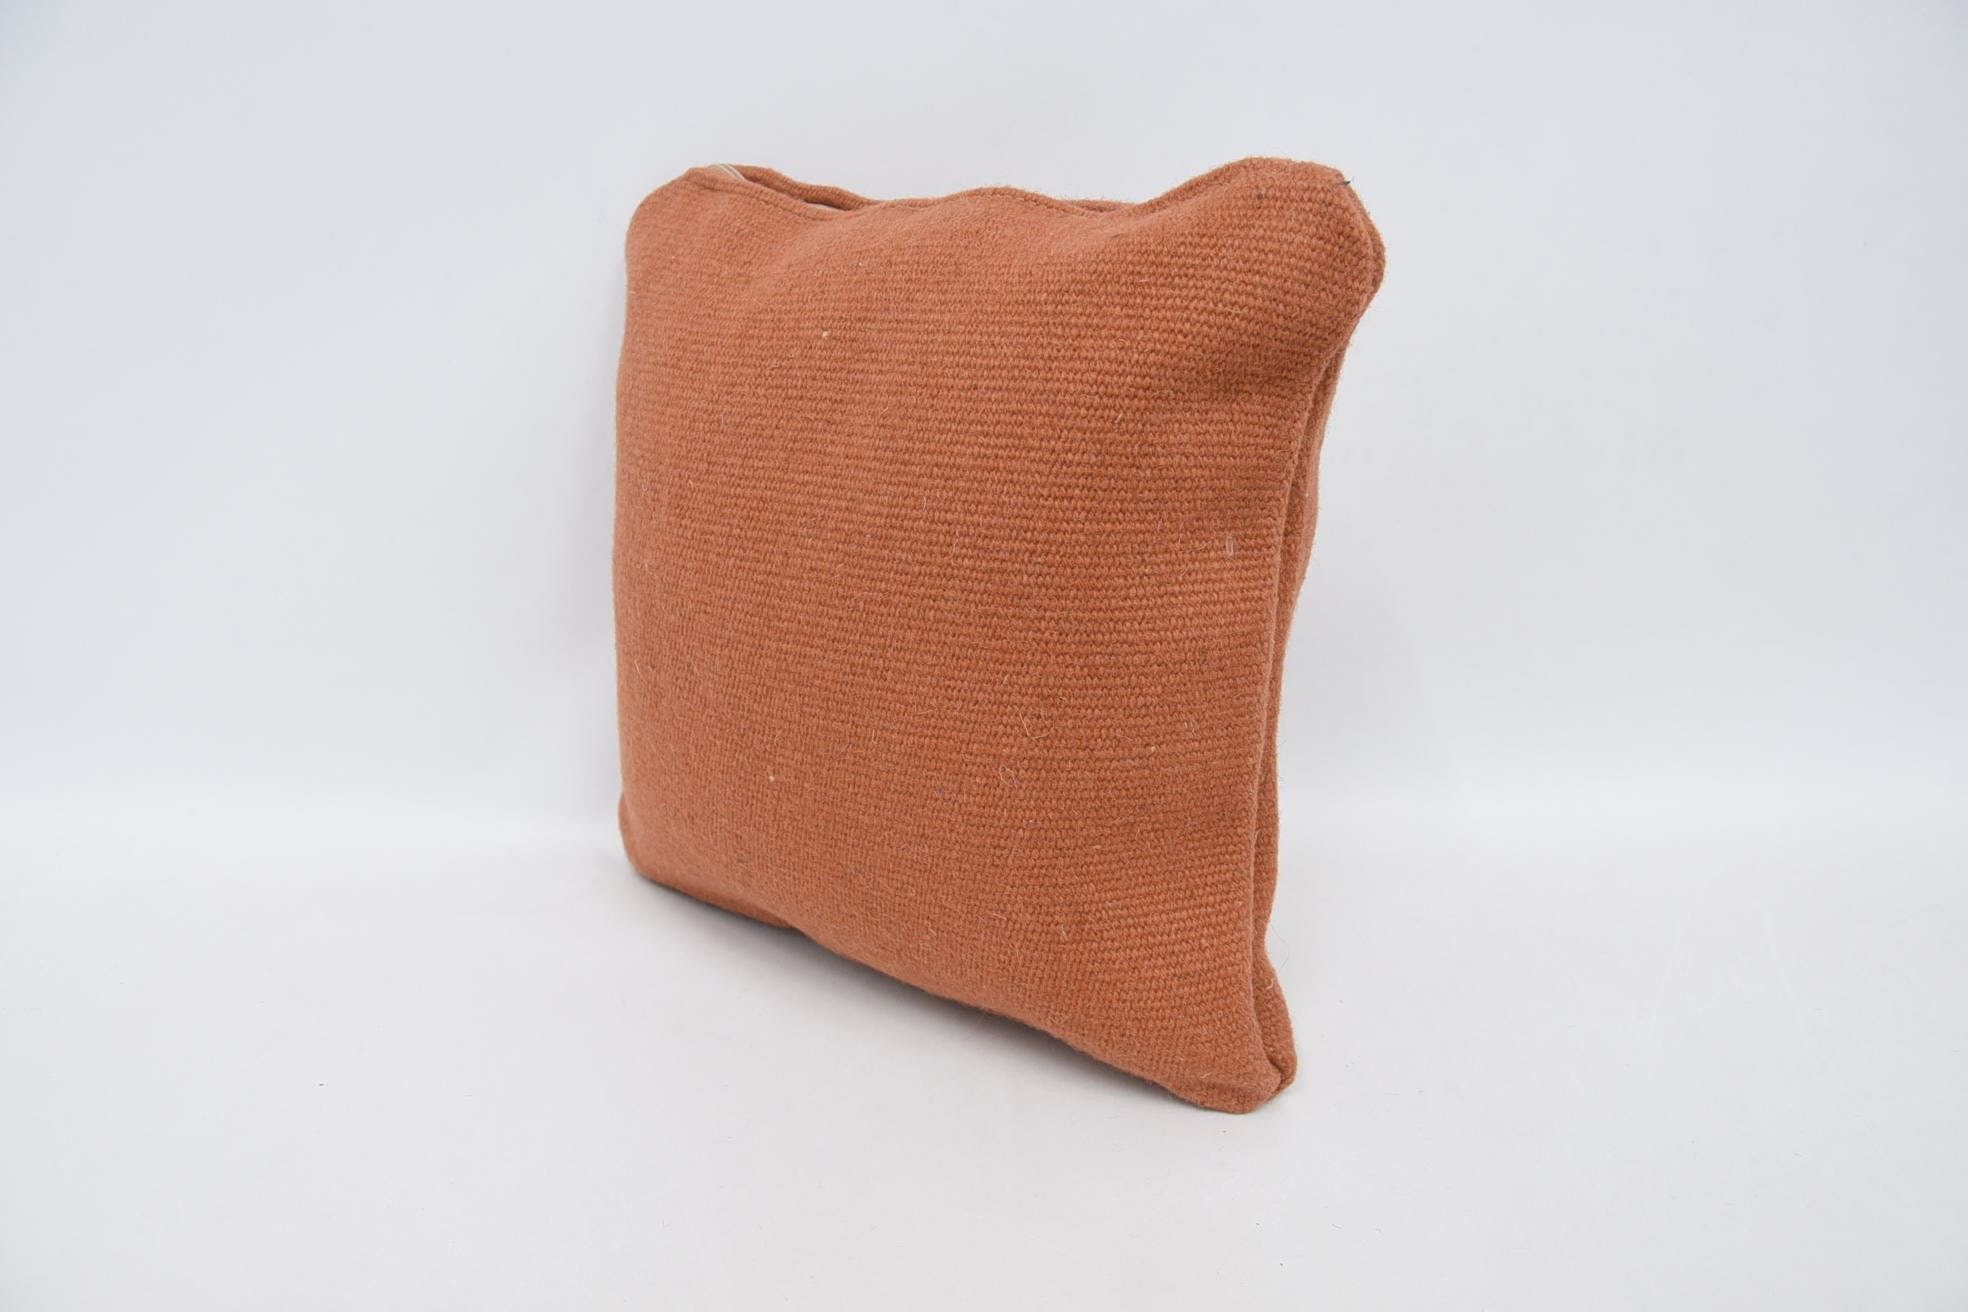 Throw Kilim Pillow, Patio Pillow Cover, 12"x12" Orange Cushion, Vintage Kilim Throw Pillow, Kilim Pillow Cover, Retro Cushion Case